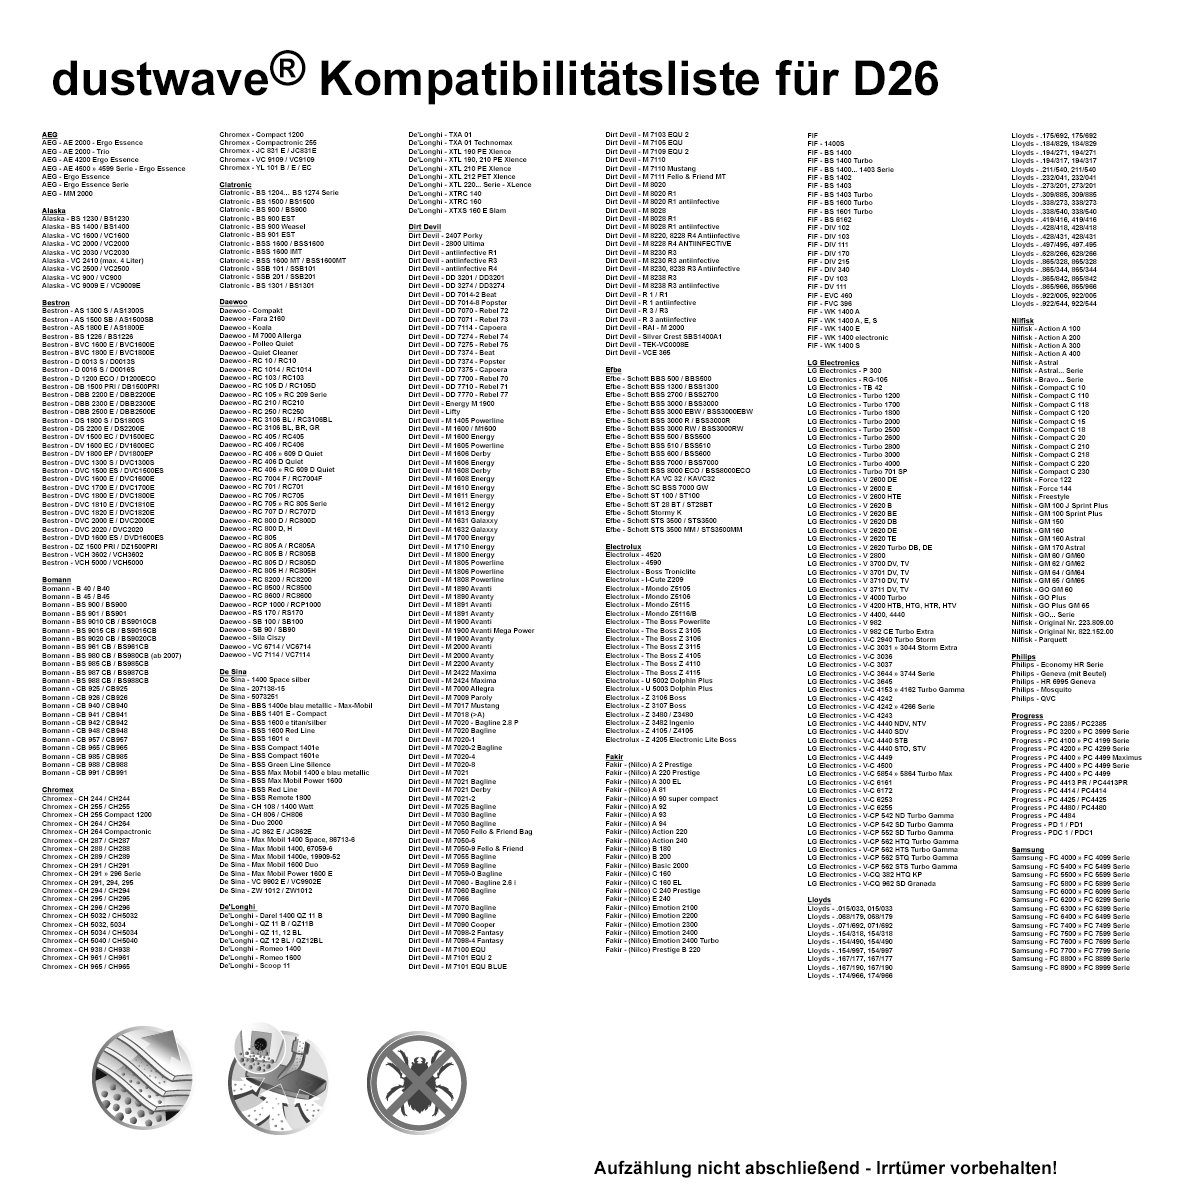 BKS1215, Hepa-Filter Dustwave / - (ca. 1 Staubsaugerbeutel für 1215 Test-Set, Staubsaugerbeutel Beko BKS passend + Test-Set, 15x15cm zuschneidbar) 1 1 St.,